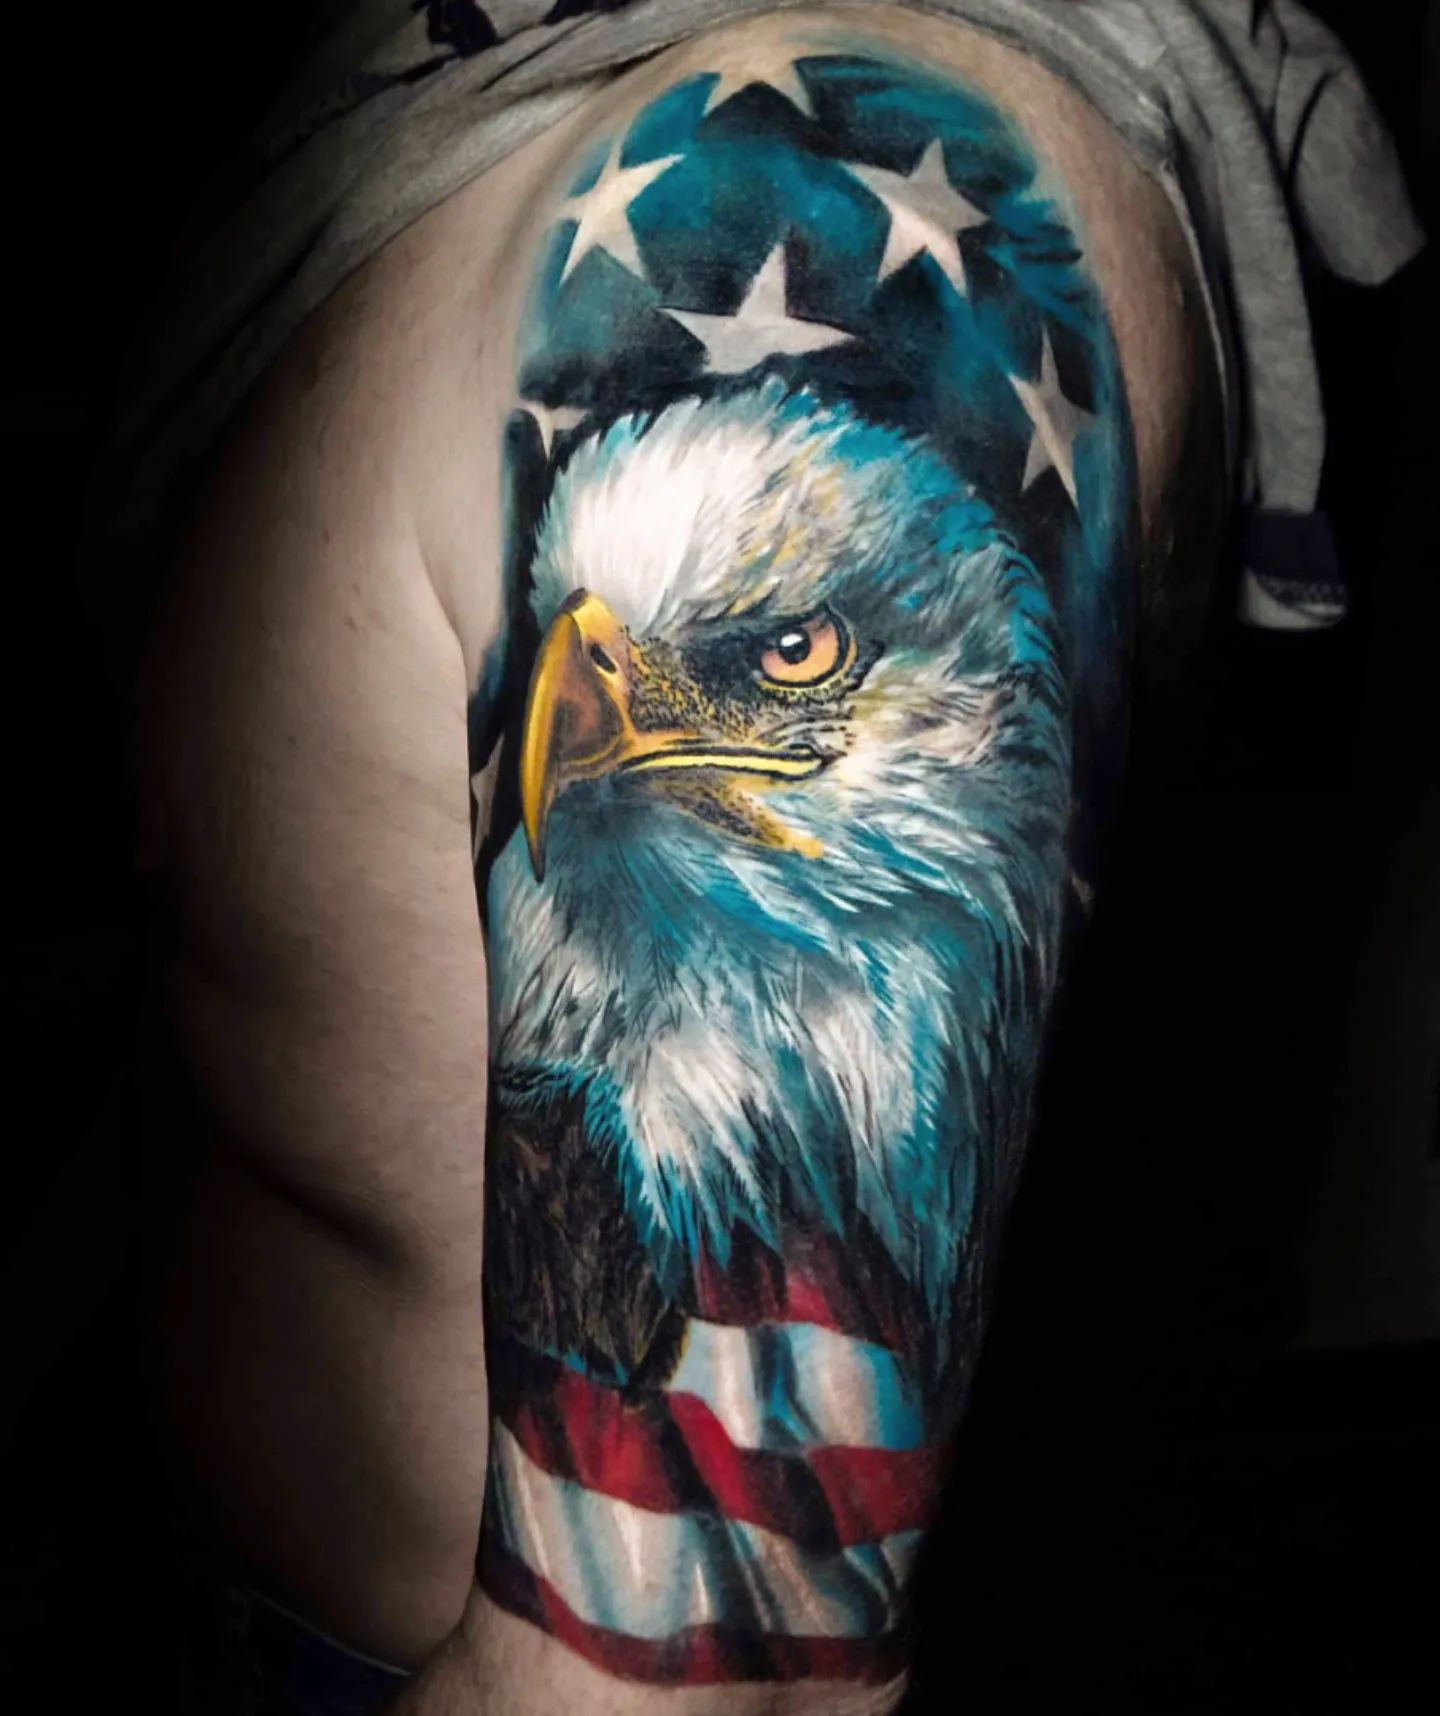 Diseño de tatuaje de águila azul y bandera estadounidense.